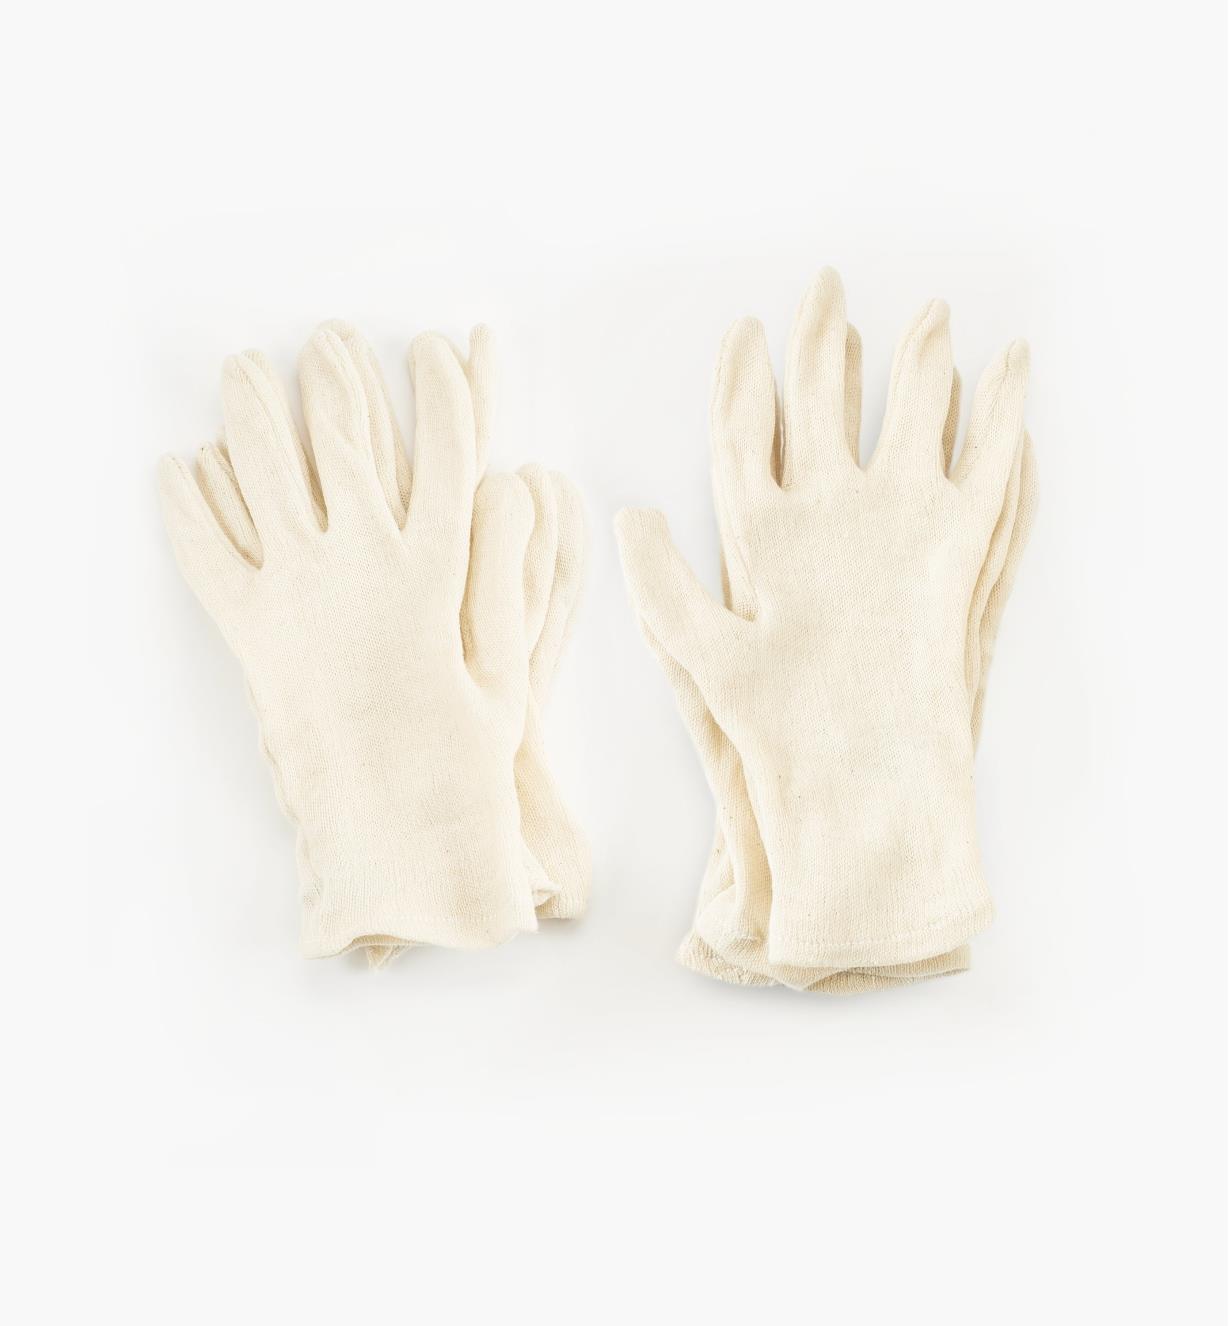 67K9101 - Sous-gants en coton pour femme, 3 paires